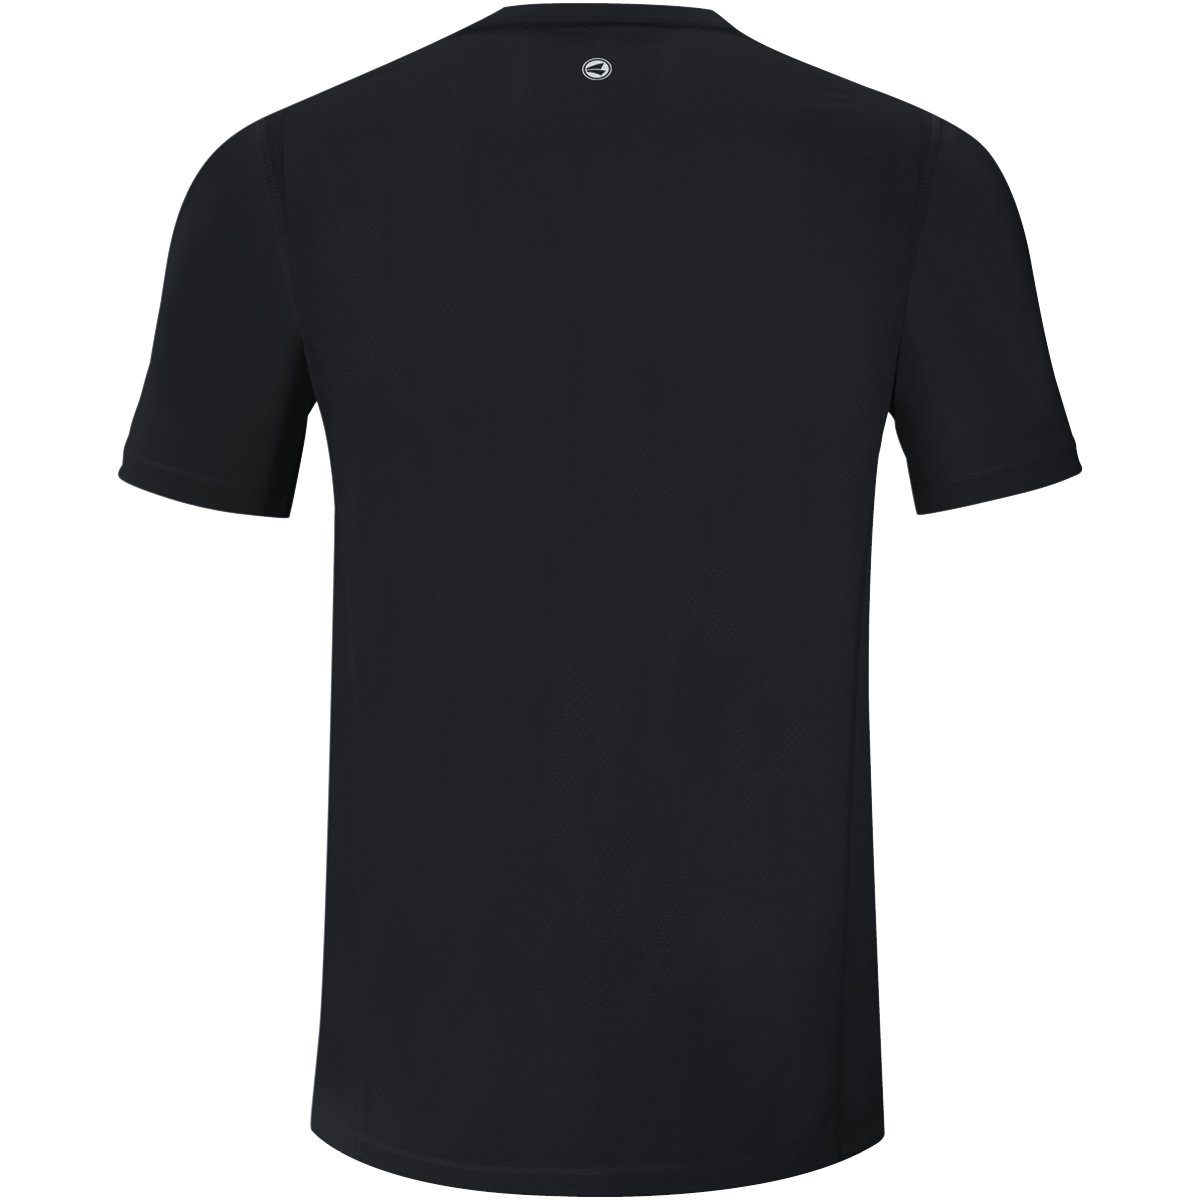 Kurzarmshirt Jako 2.0 schwarz/weiý T-Shirt Run